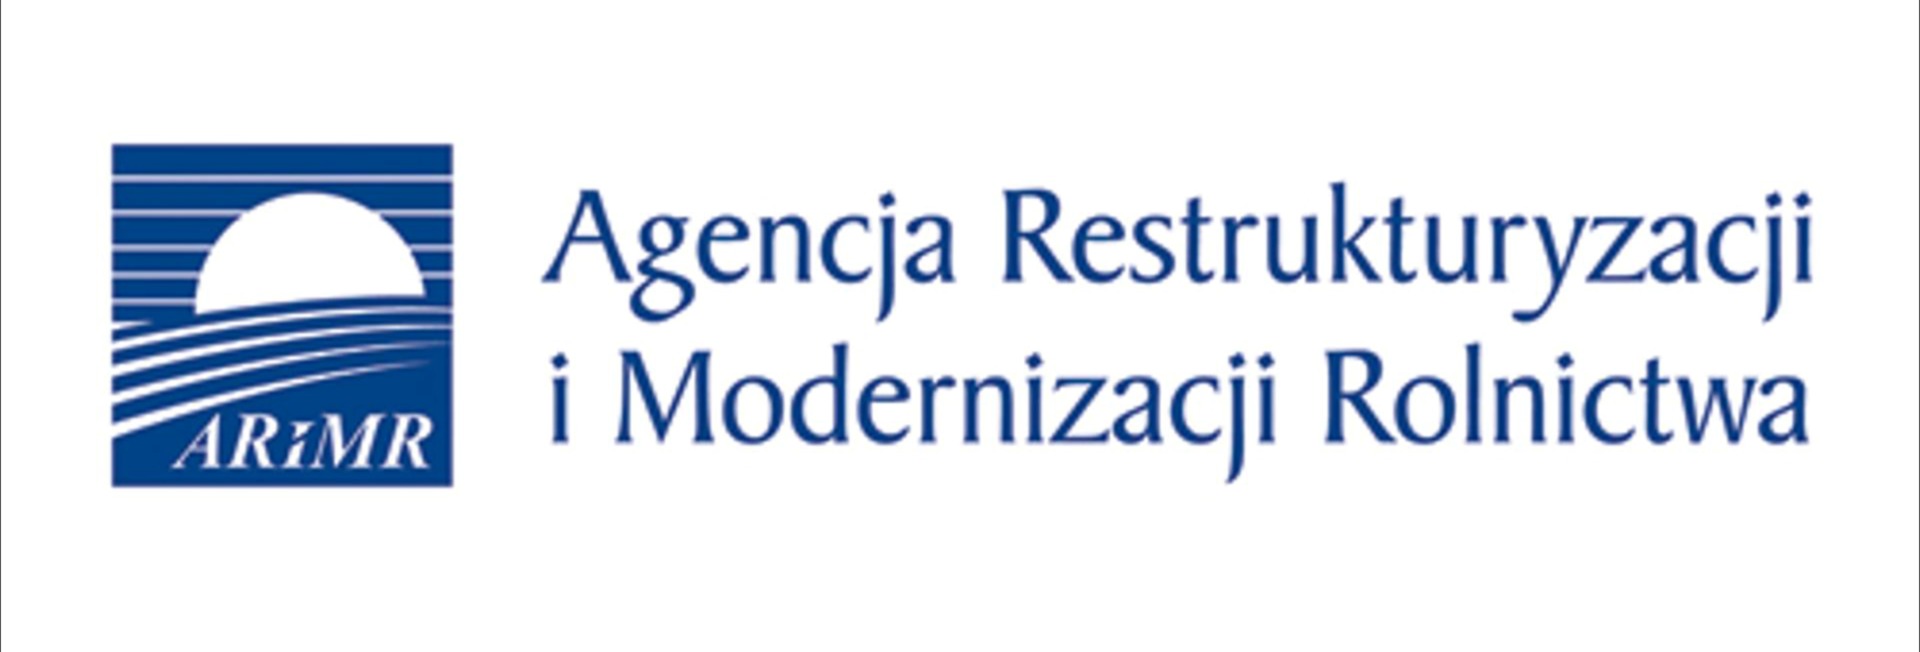 foto: logotyp Agencji Restrukturyzacji i Modernizacji Rolnictwa - arimr 2